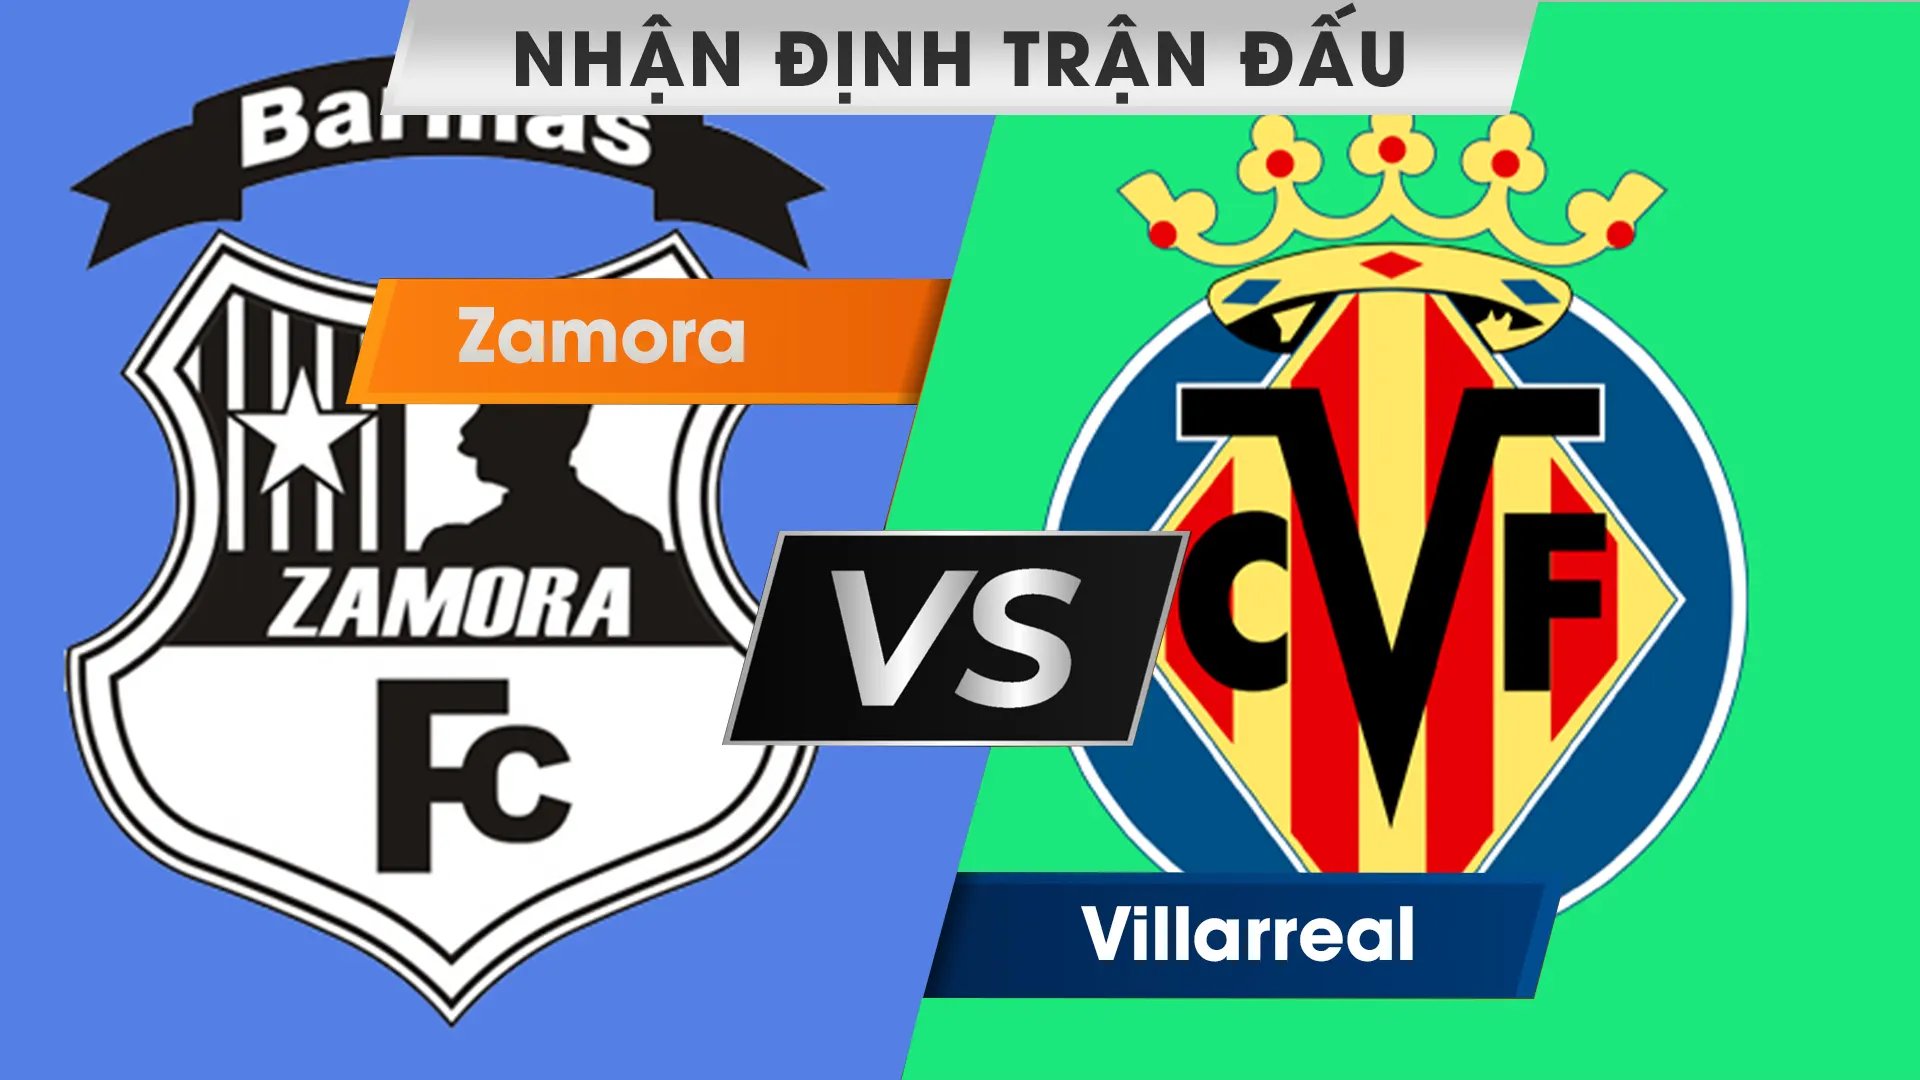 Nhận định trận đấu giữa Zamora vs Villarreal 01